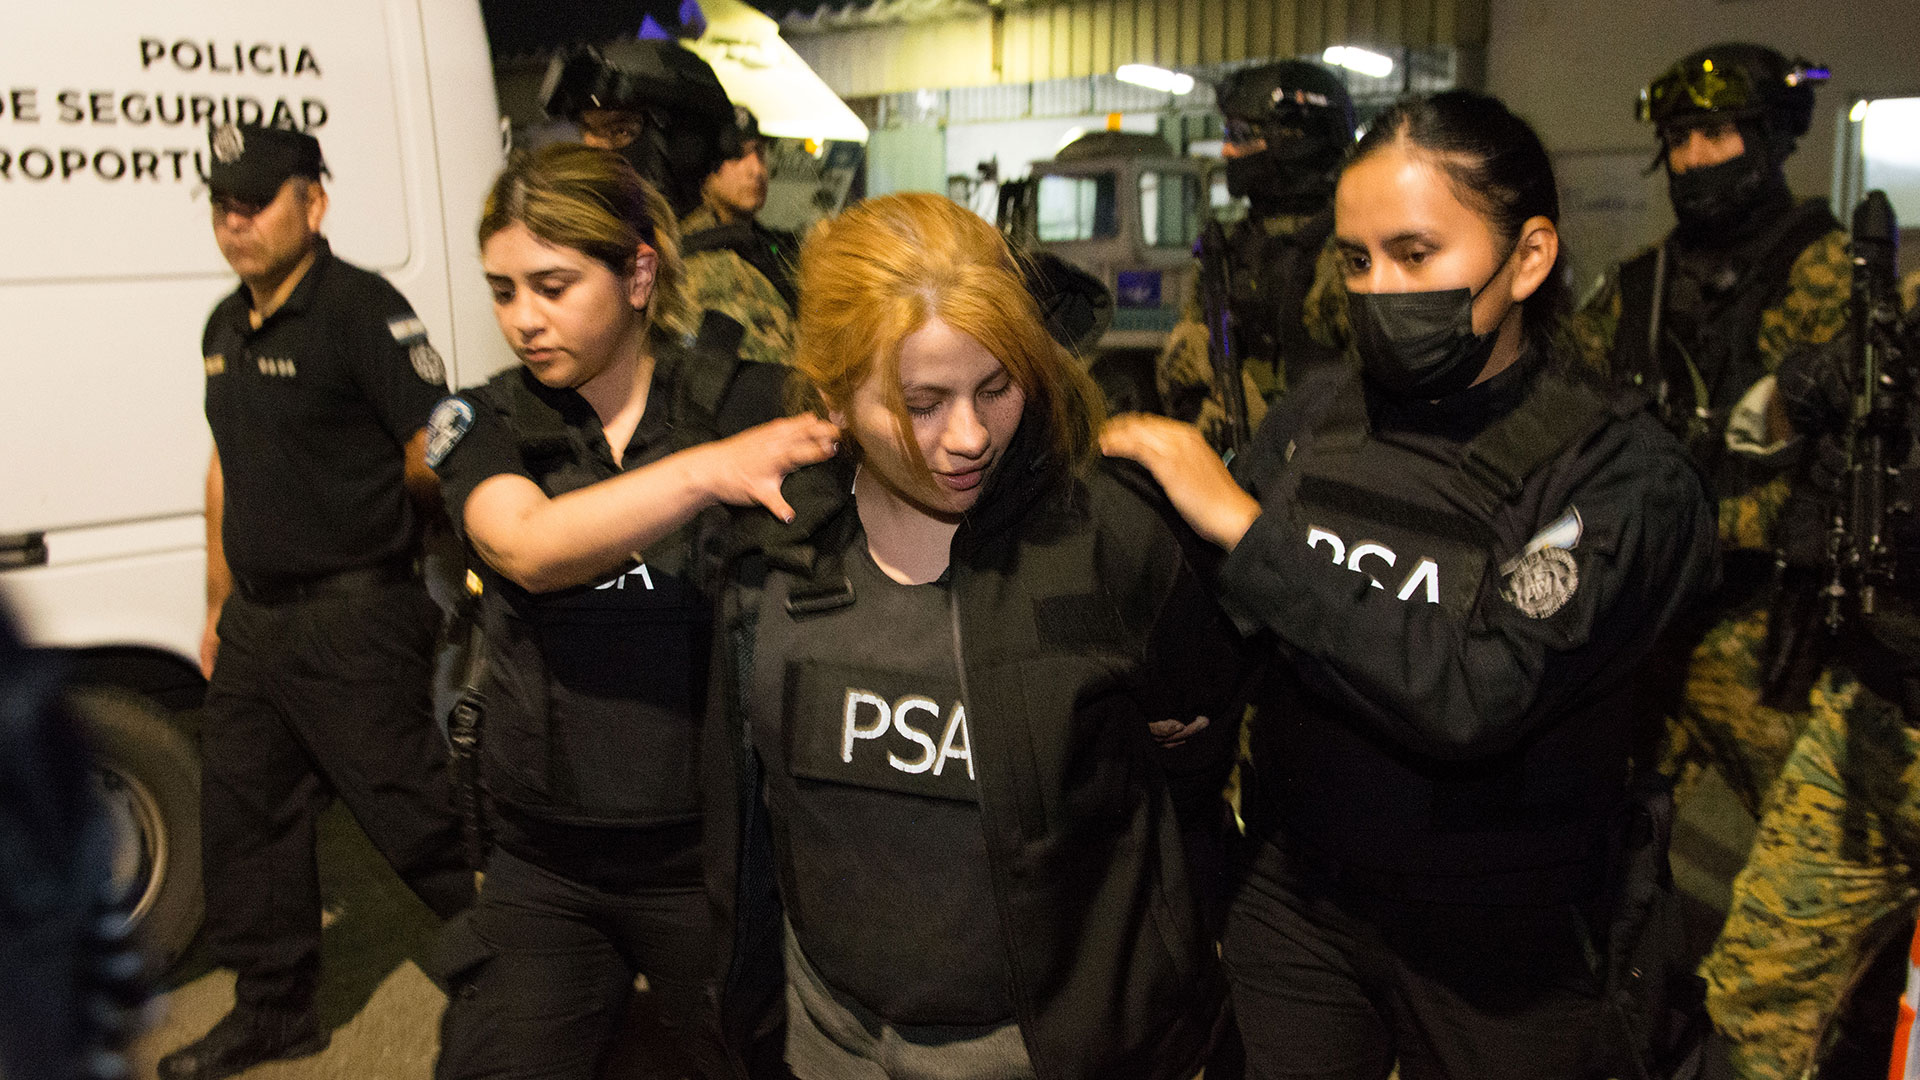 Brenda Uliarte tiene un rol clave en la organización que intentó asesinar a Cristina Fernández de Kirchner